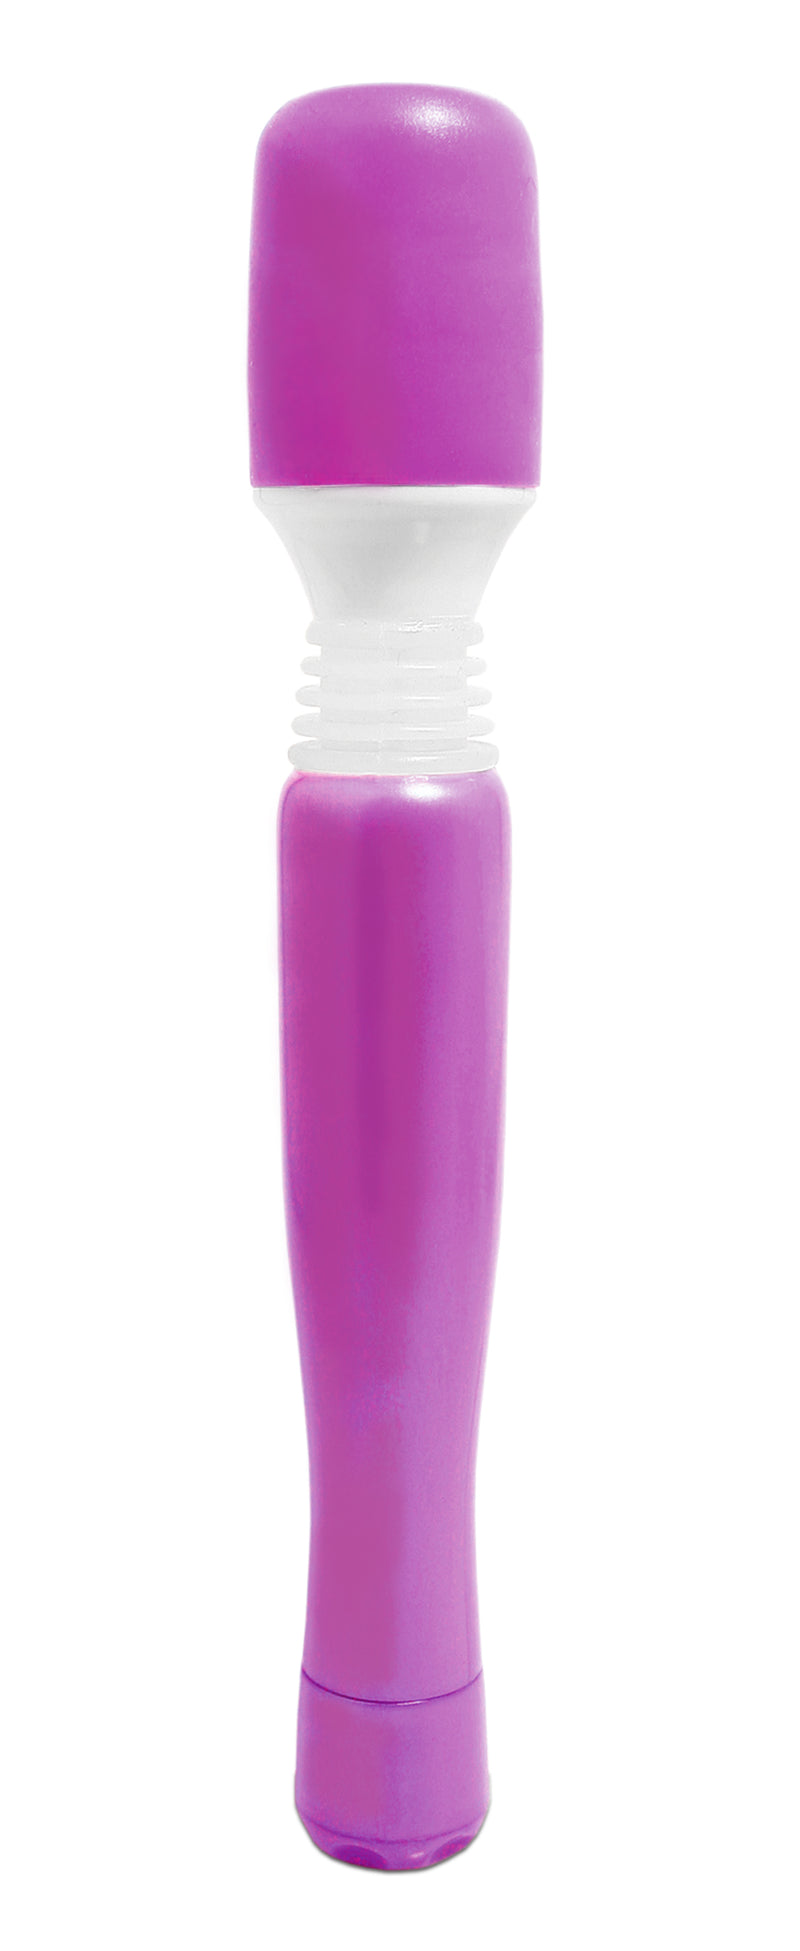 Pipedream Products Mini Wanachi Waterproof Massager Purple at $13.99